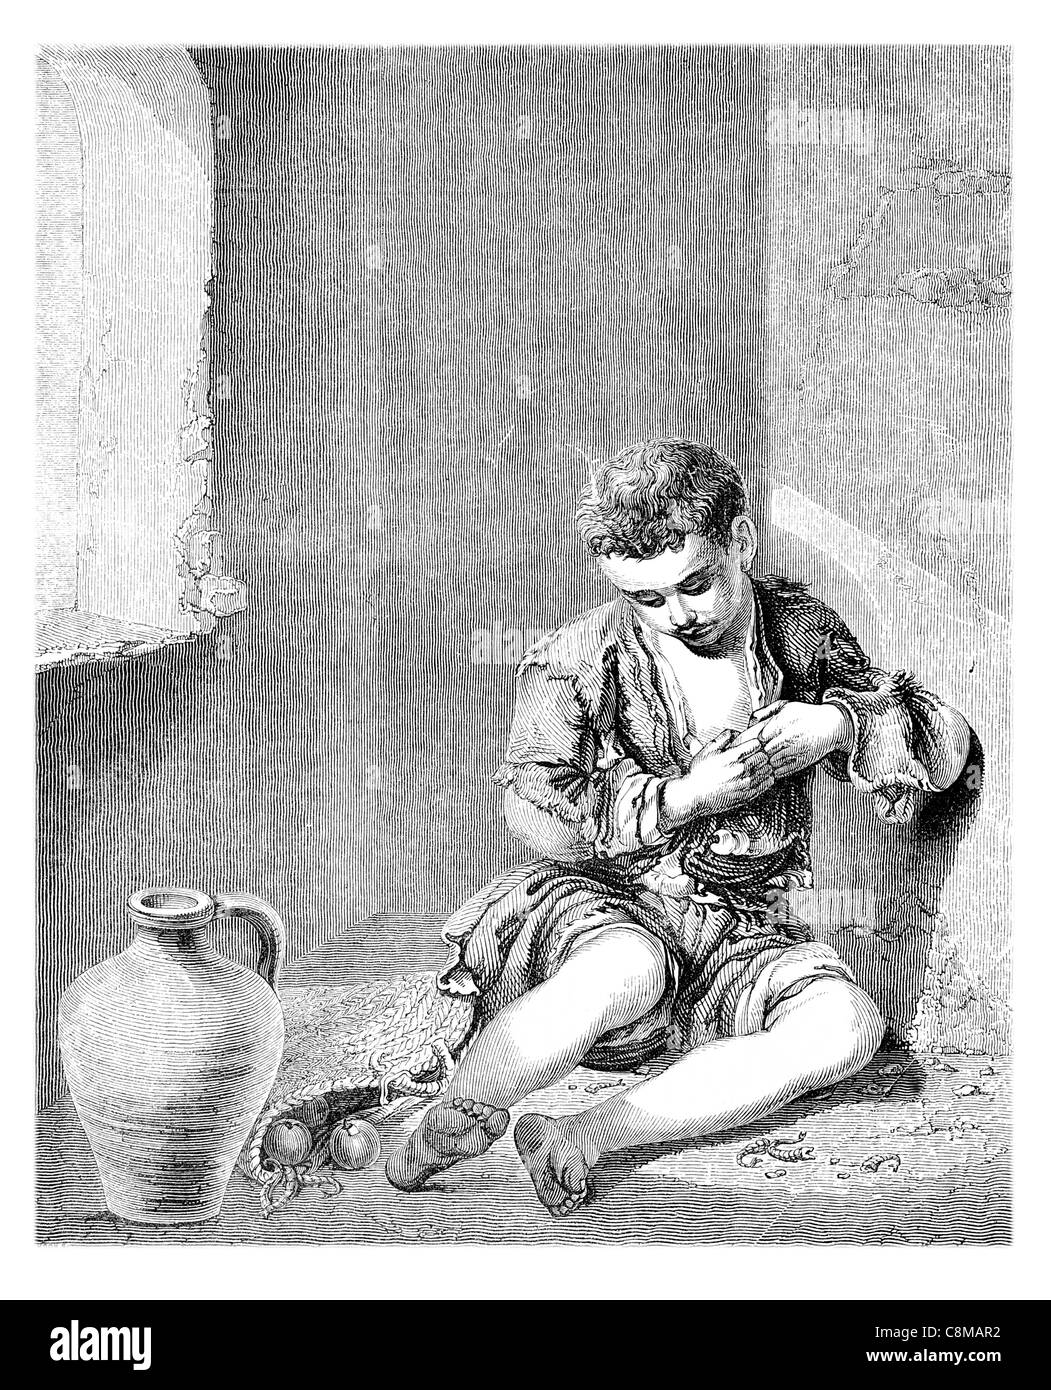 Jeune mendiant Bartolomé Esteban Murillo 1617 1682 peintre baroque espagnol enfants la mendicité des enfants mendier supplié pauvre paysan lonely Banque D'Images